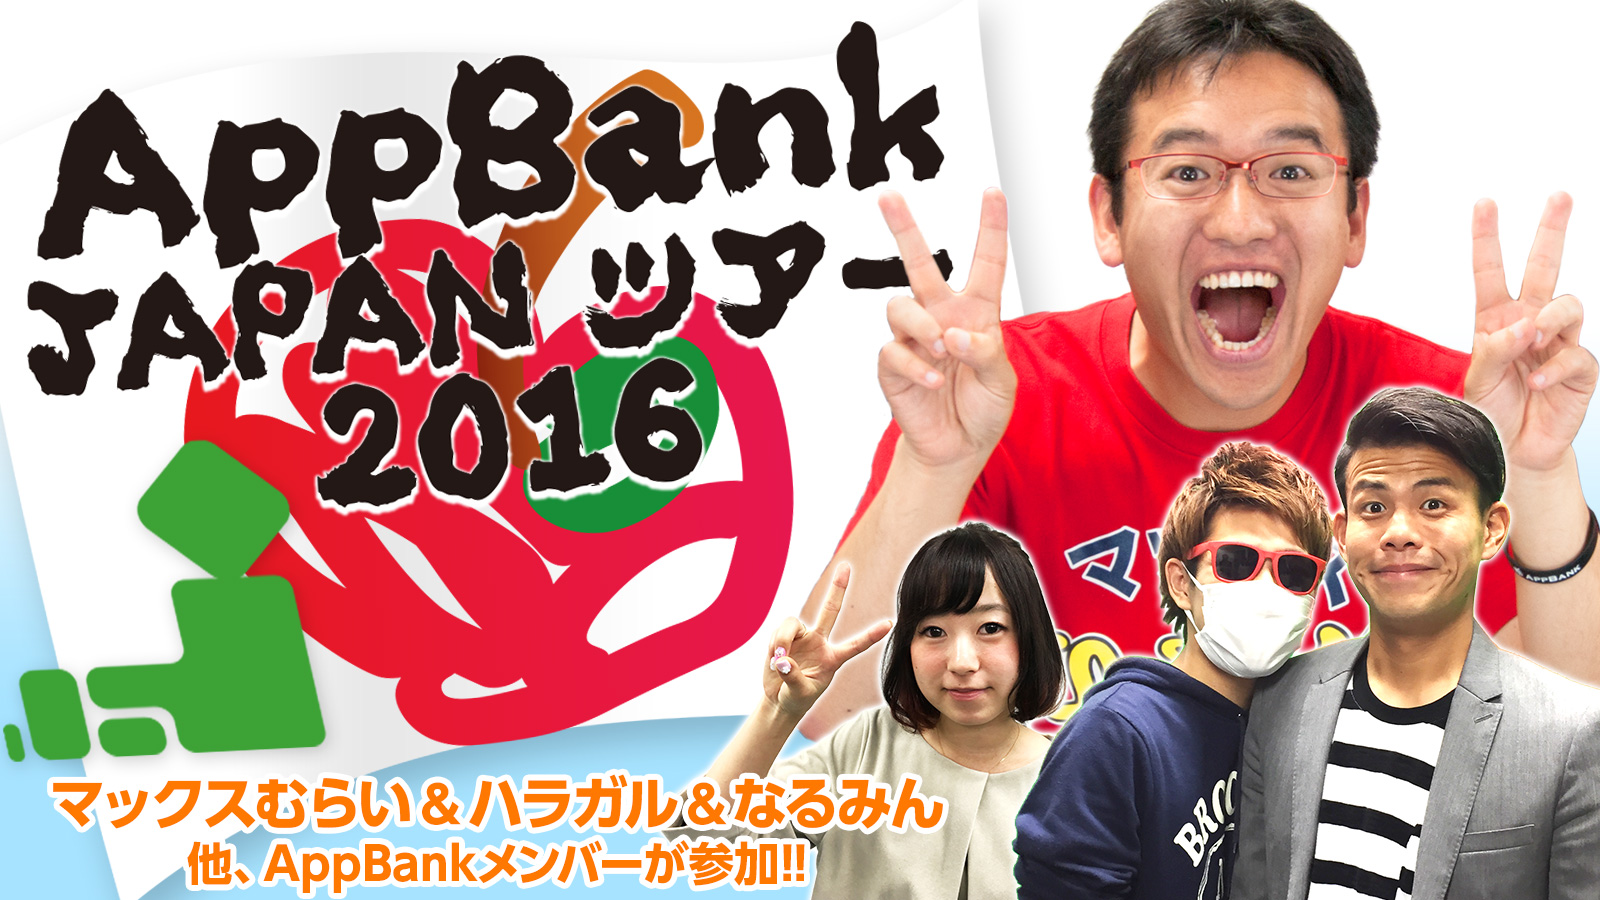 マックスむらいやハラガル なるみん達が全国をまわる Appbank Japanツアー 16 を開催いたします Appbankのプレスリリース